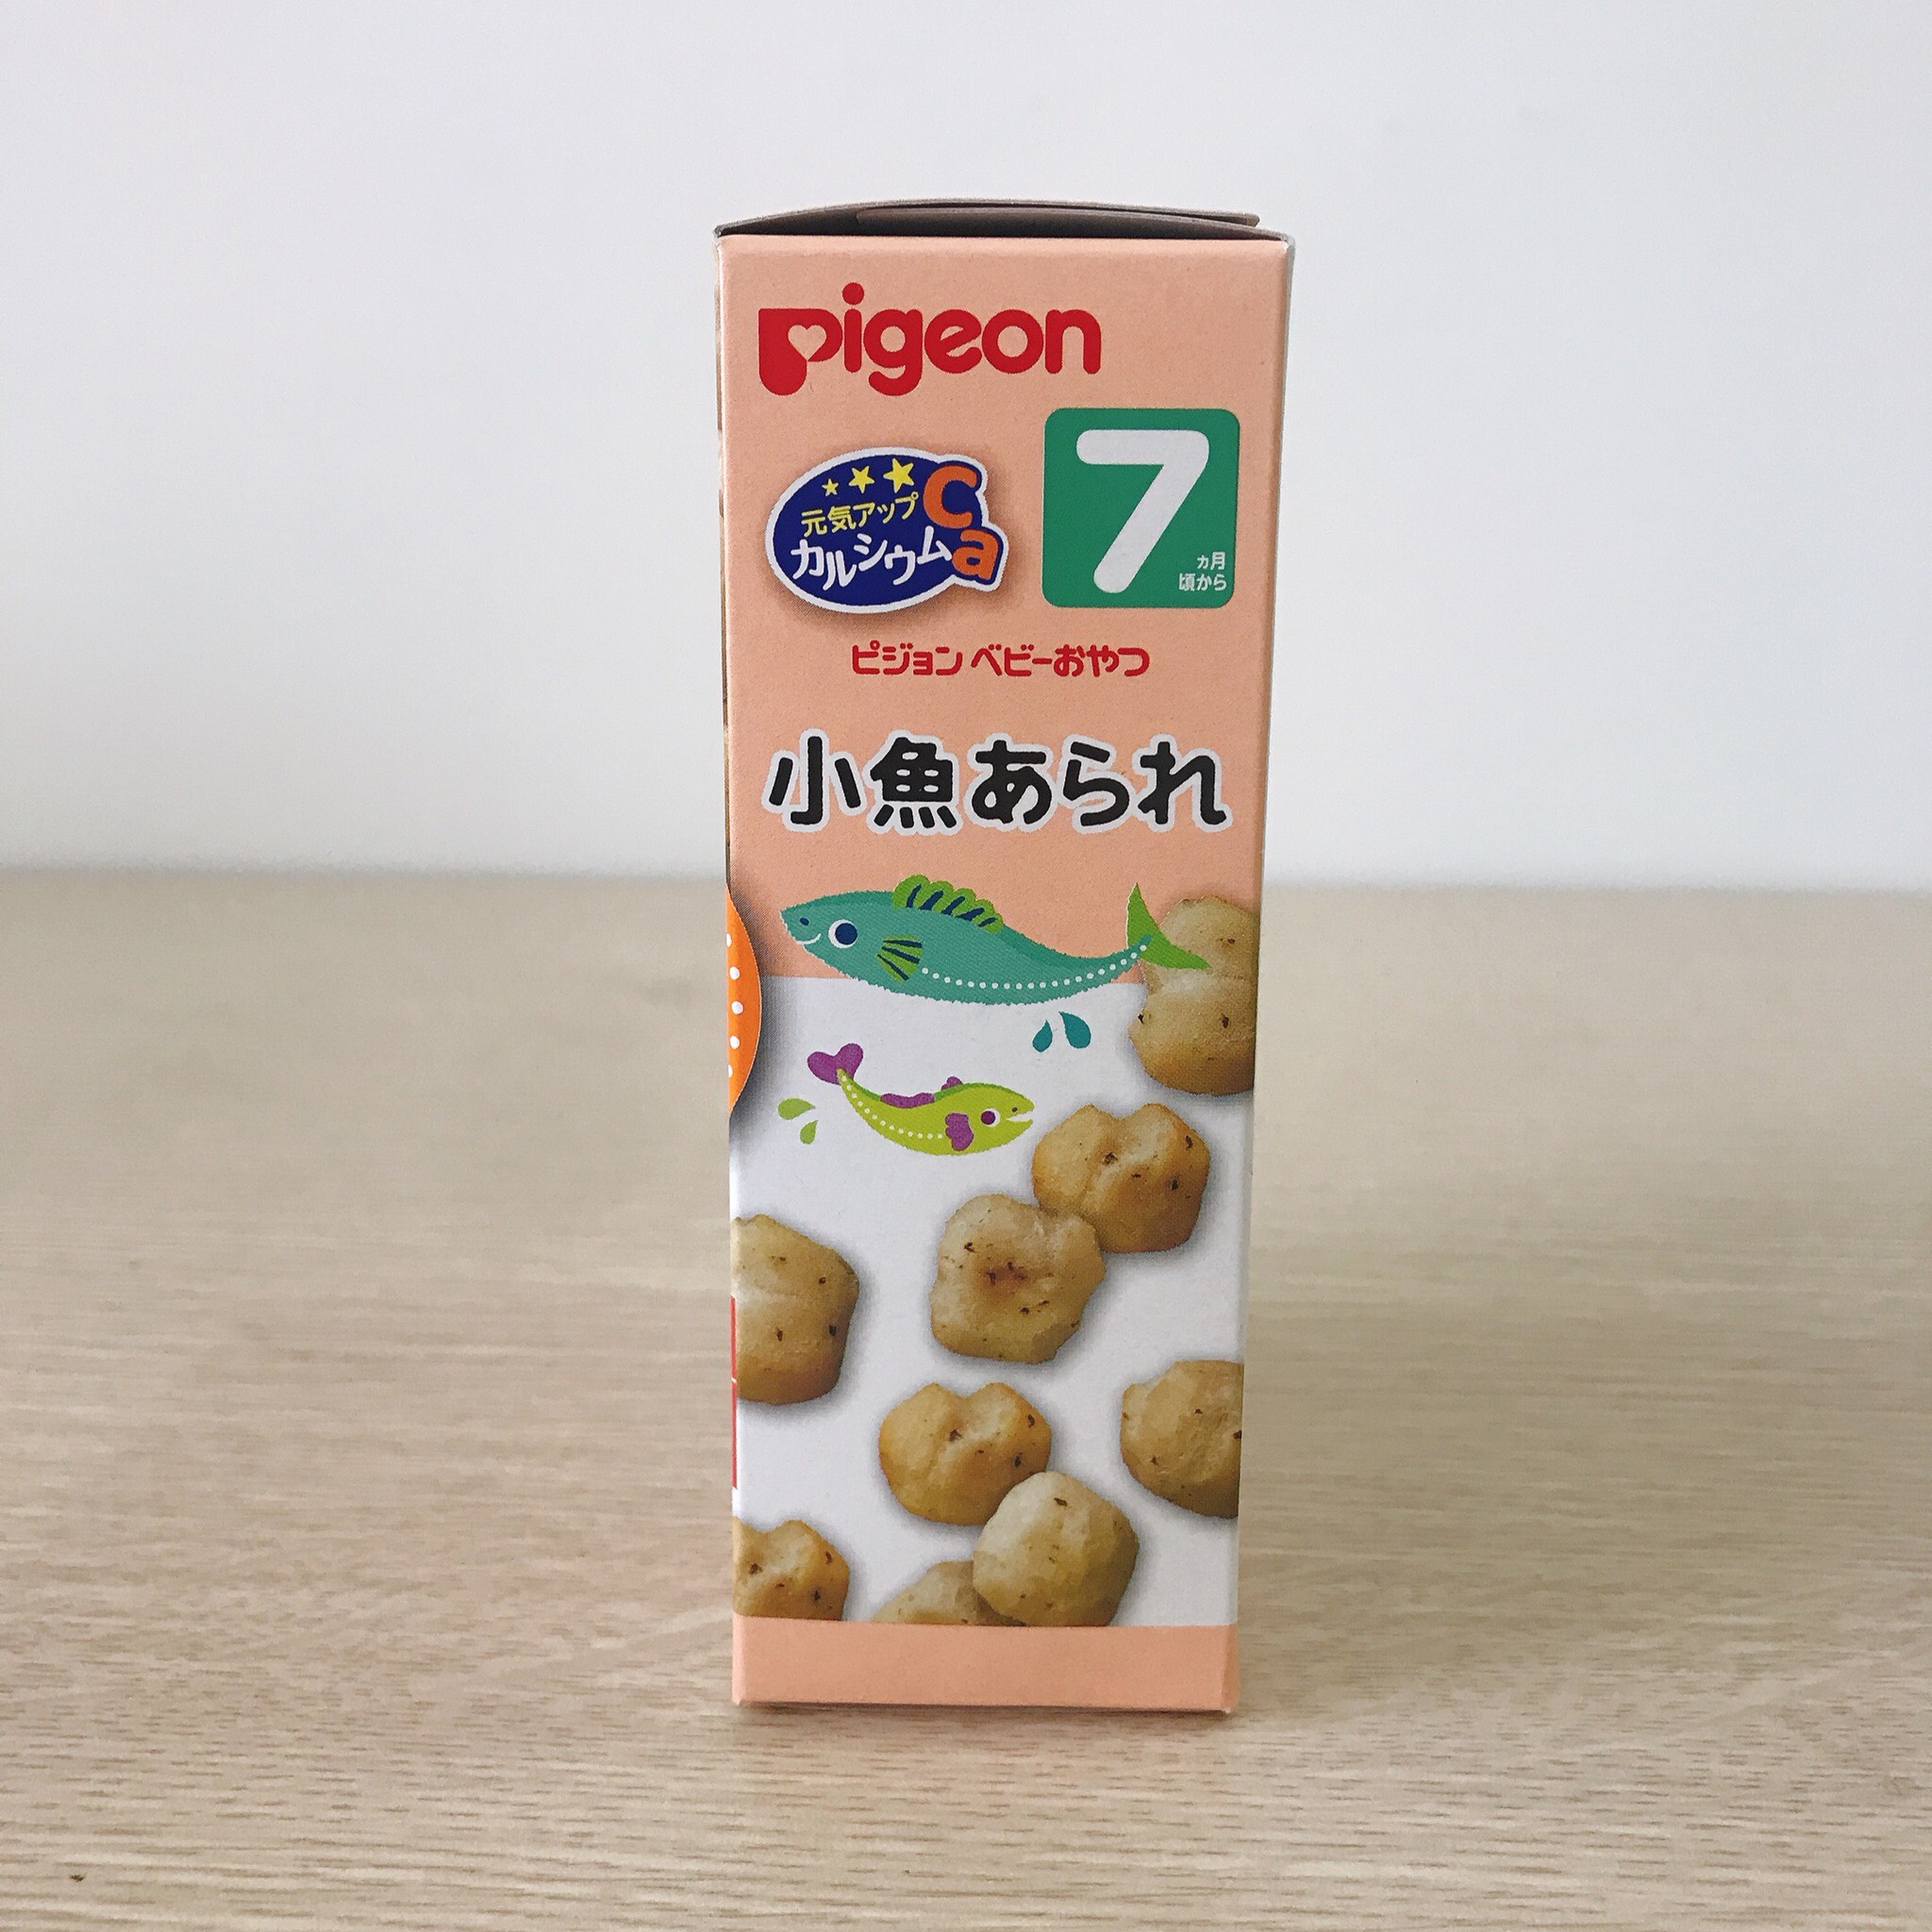 Bánh  ăn dặm Pigeon Nhật Bản 7M - Vị rong biển và cá 13367